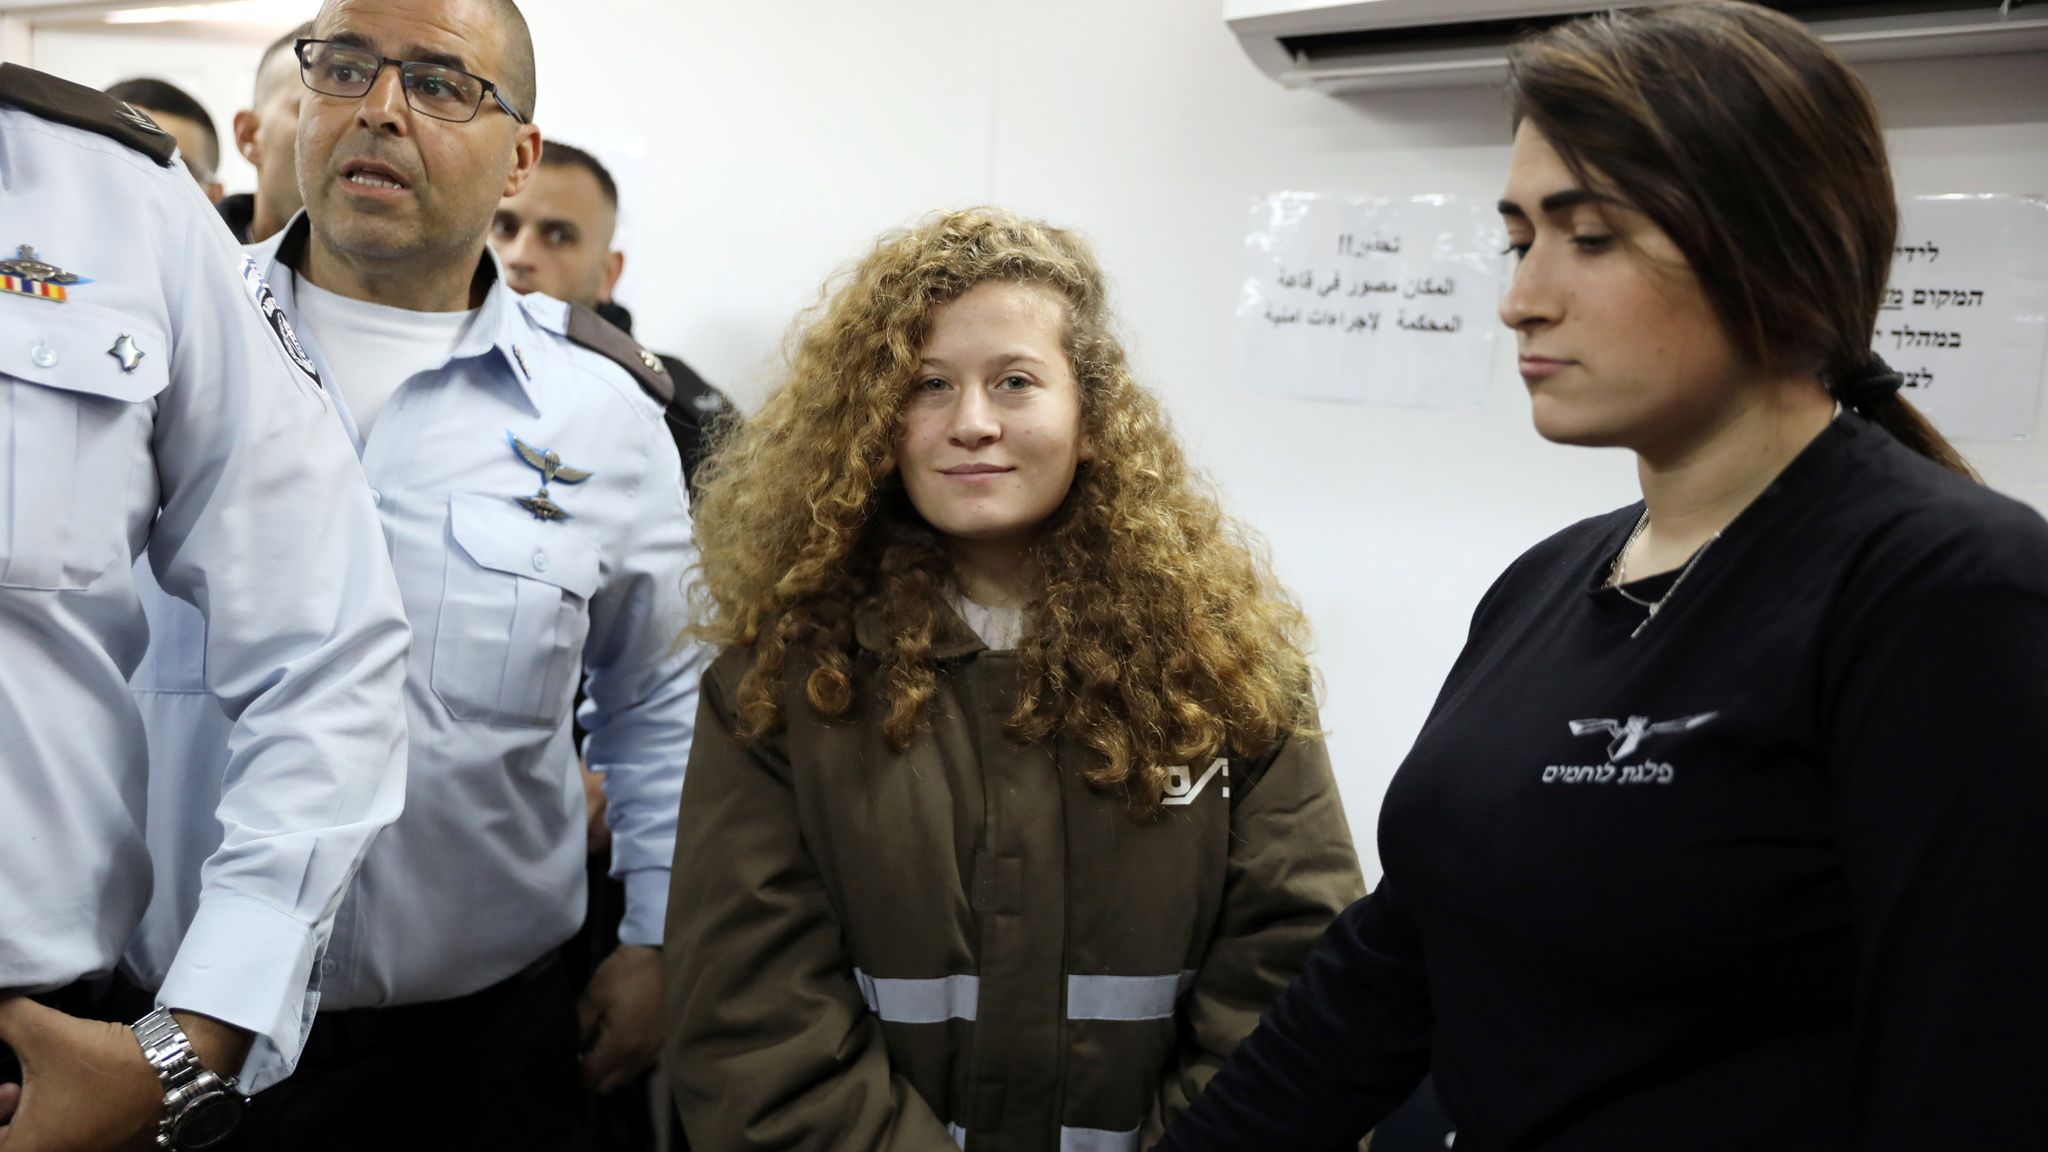 Palestinian Slap Video Teen Ahed Tamimi To Remain In Custody Until